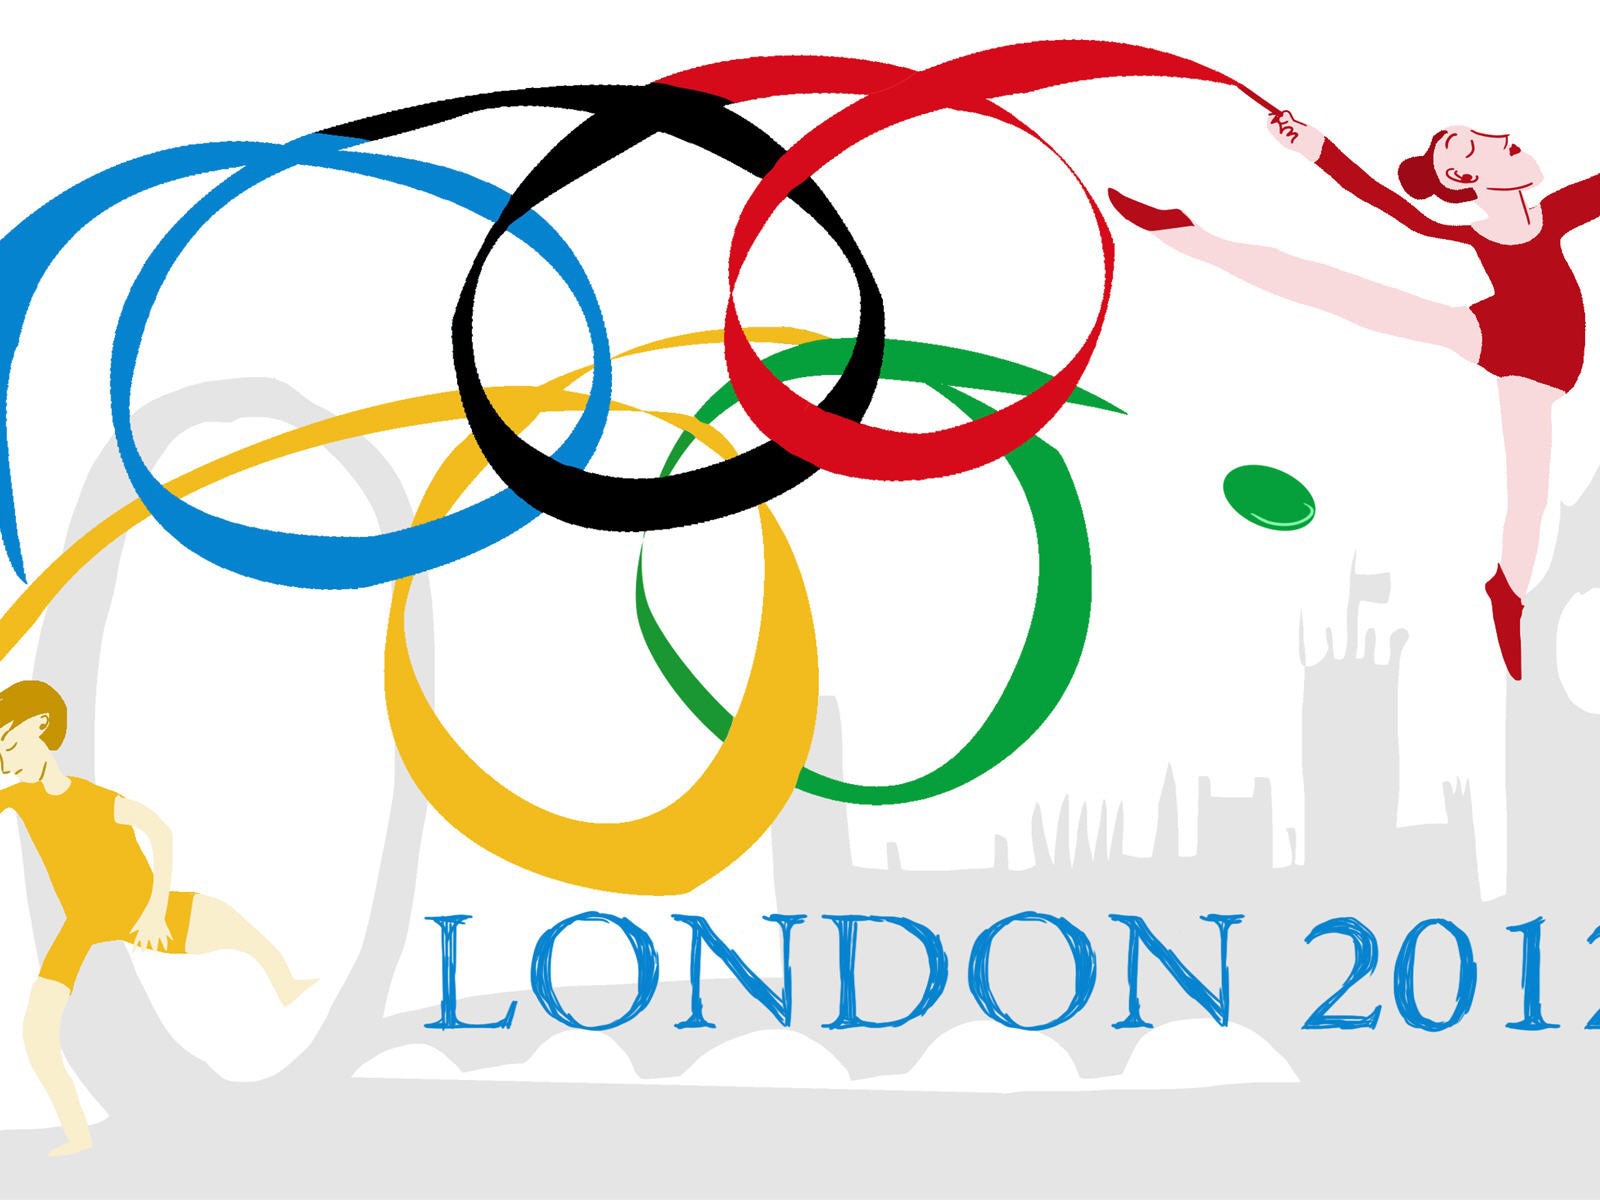 Londres 2012 Olimpiadas fondos temáticos (2) #16 - 1600x1200